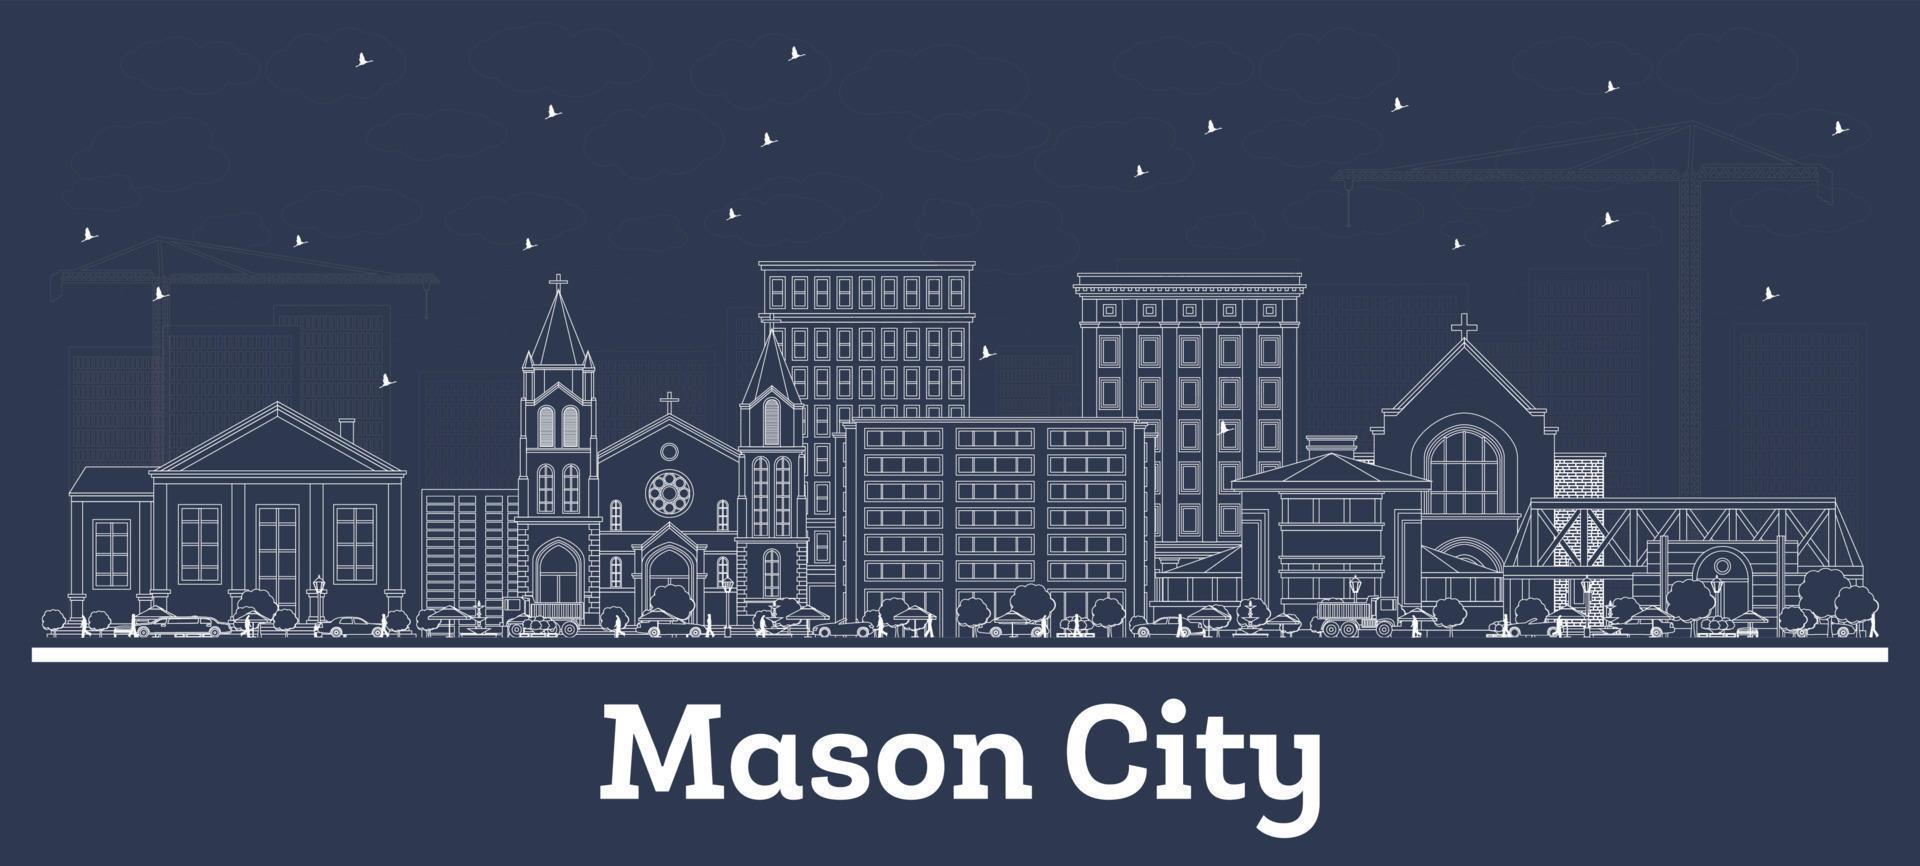 delinear el horizonte de mason city iowa con edificios blancos. vector